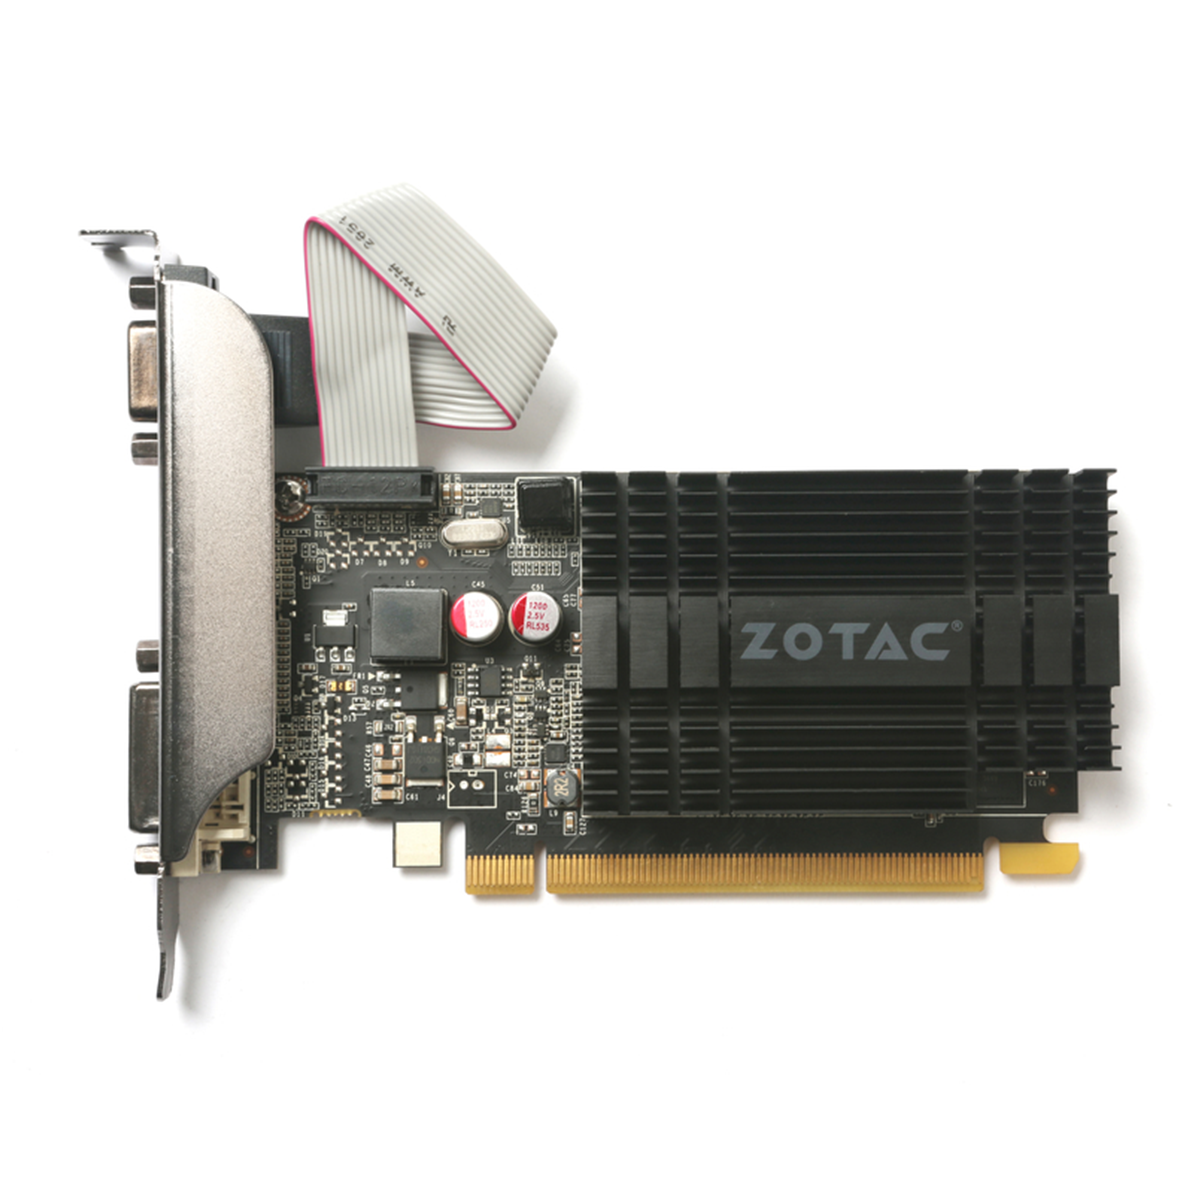 کارت گرافیک زوتک مدل GeForce G710 2GB